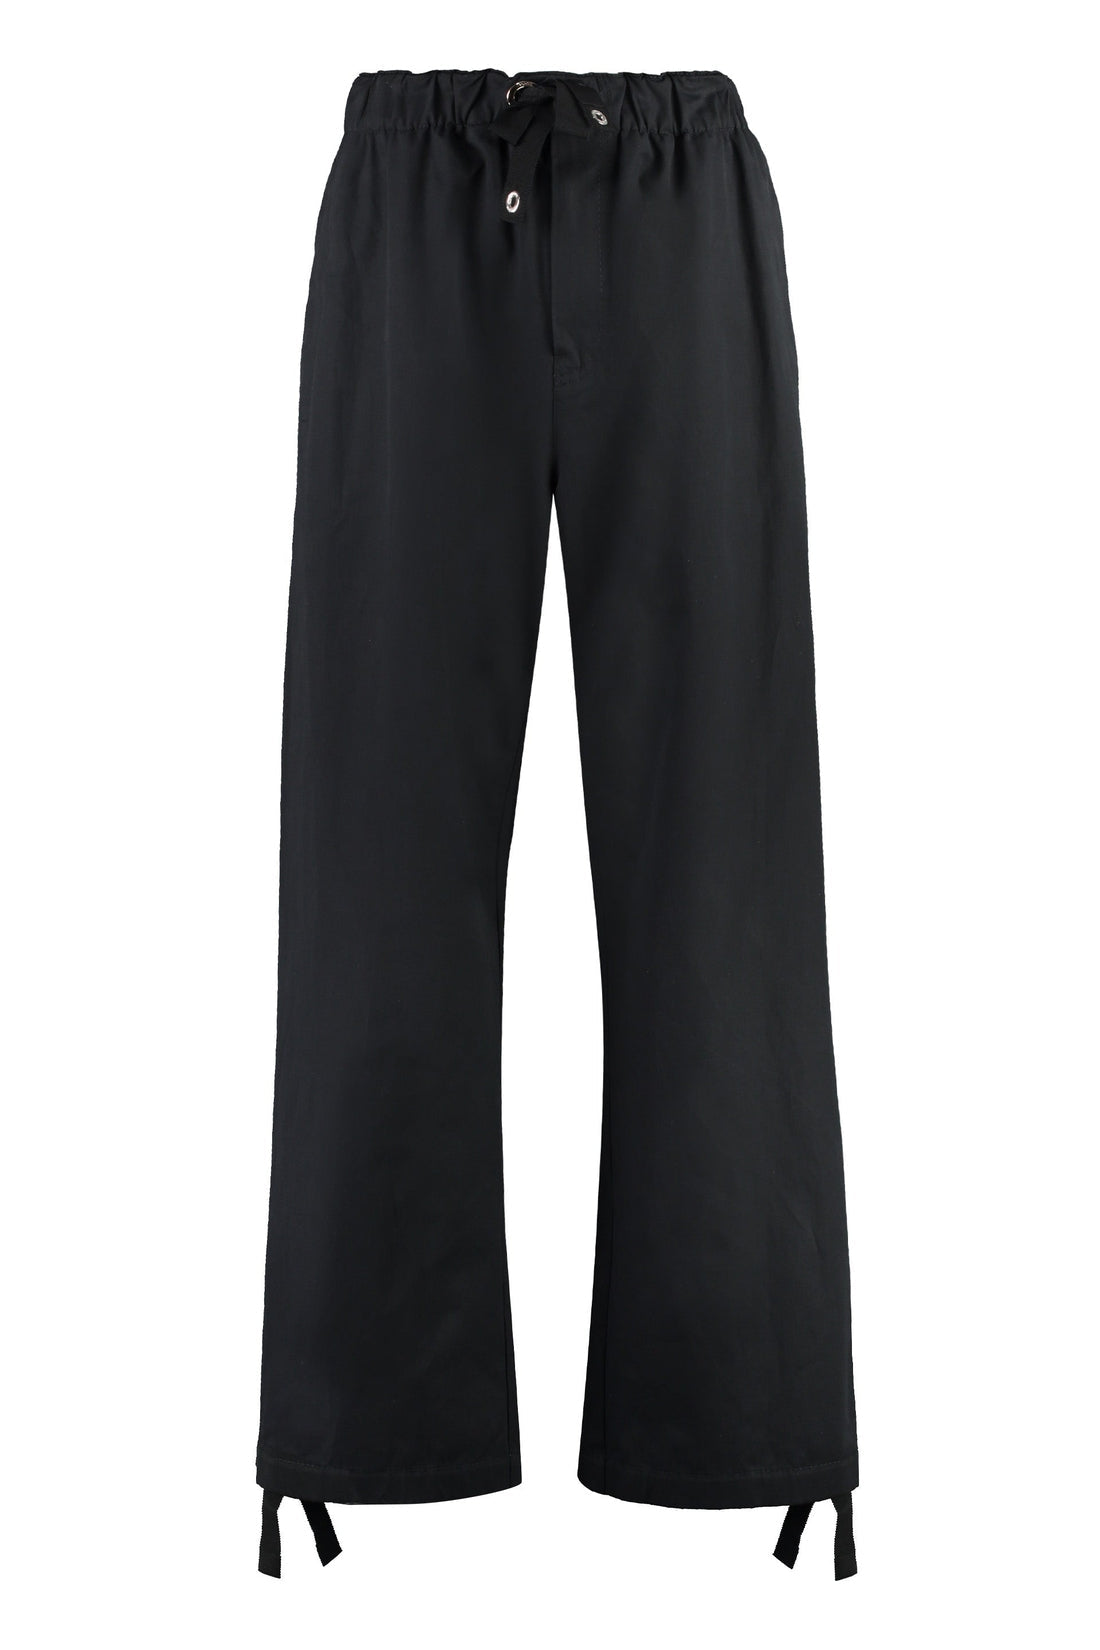 Versace-OUTLET-SALE-Cotton trousers-ARCHIVIST